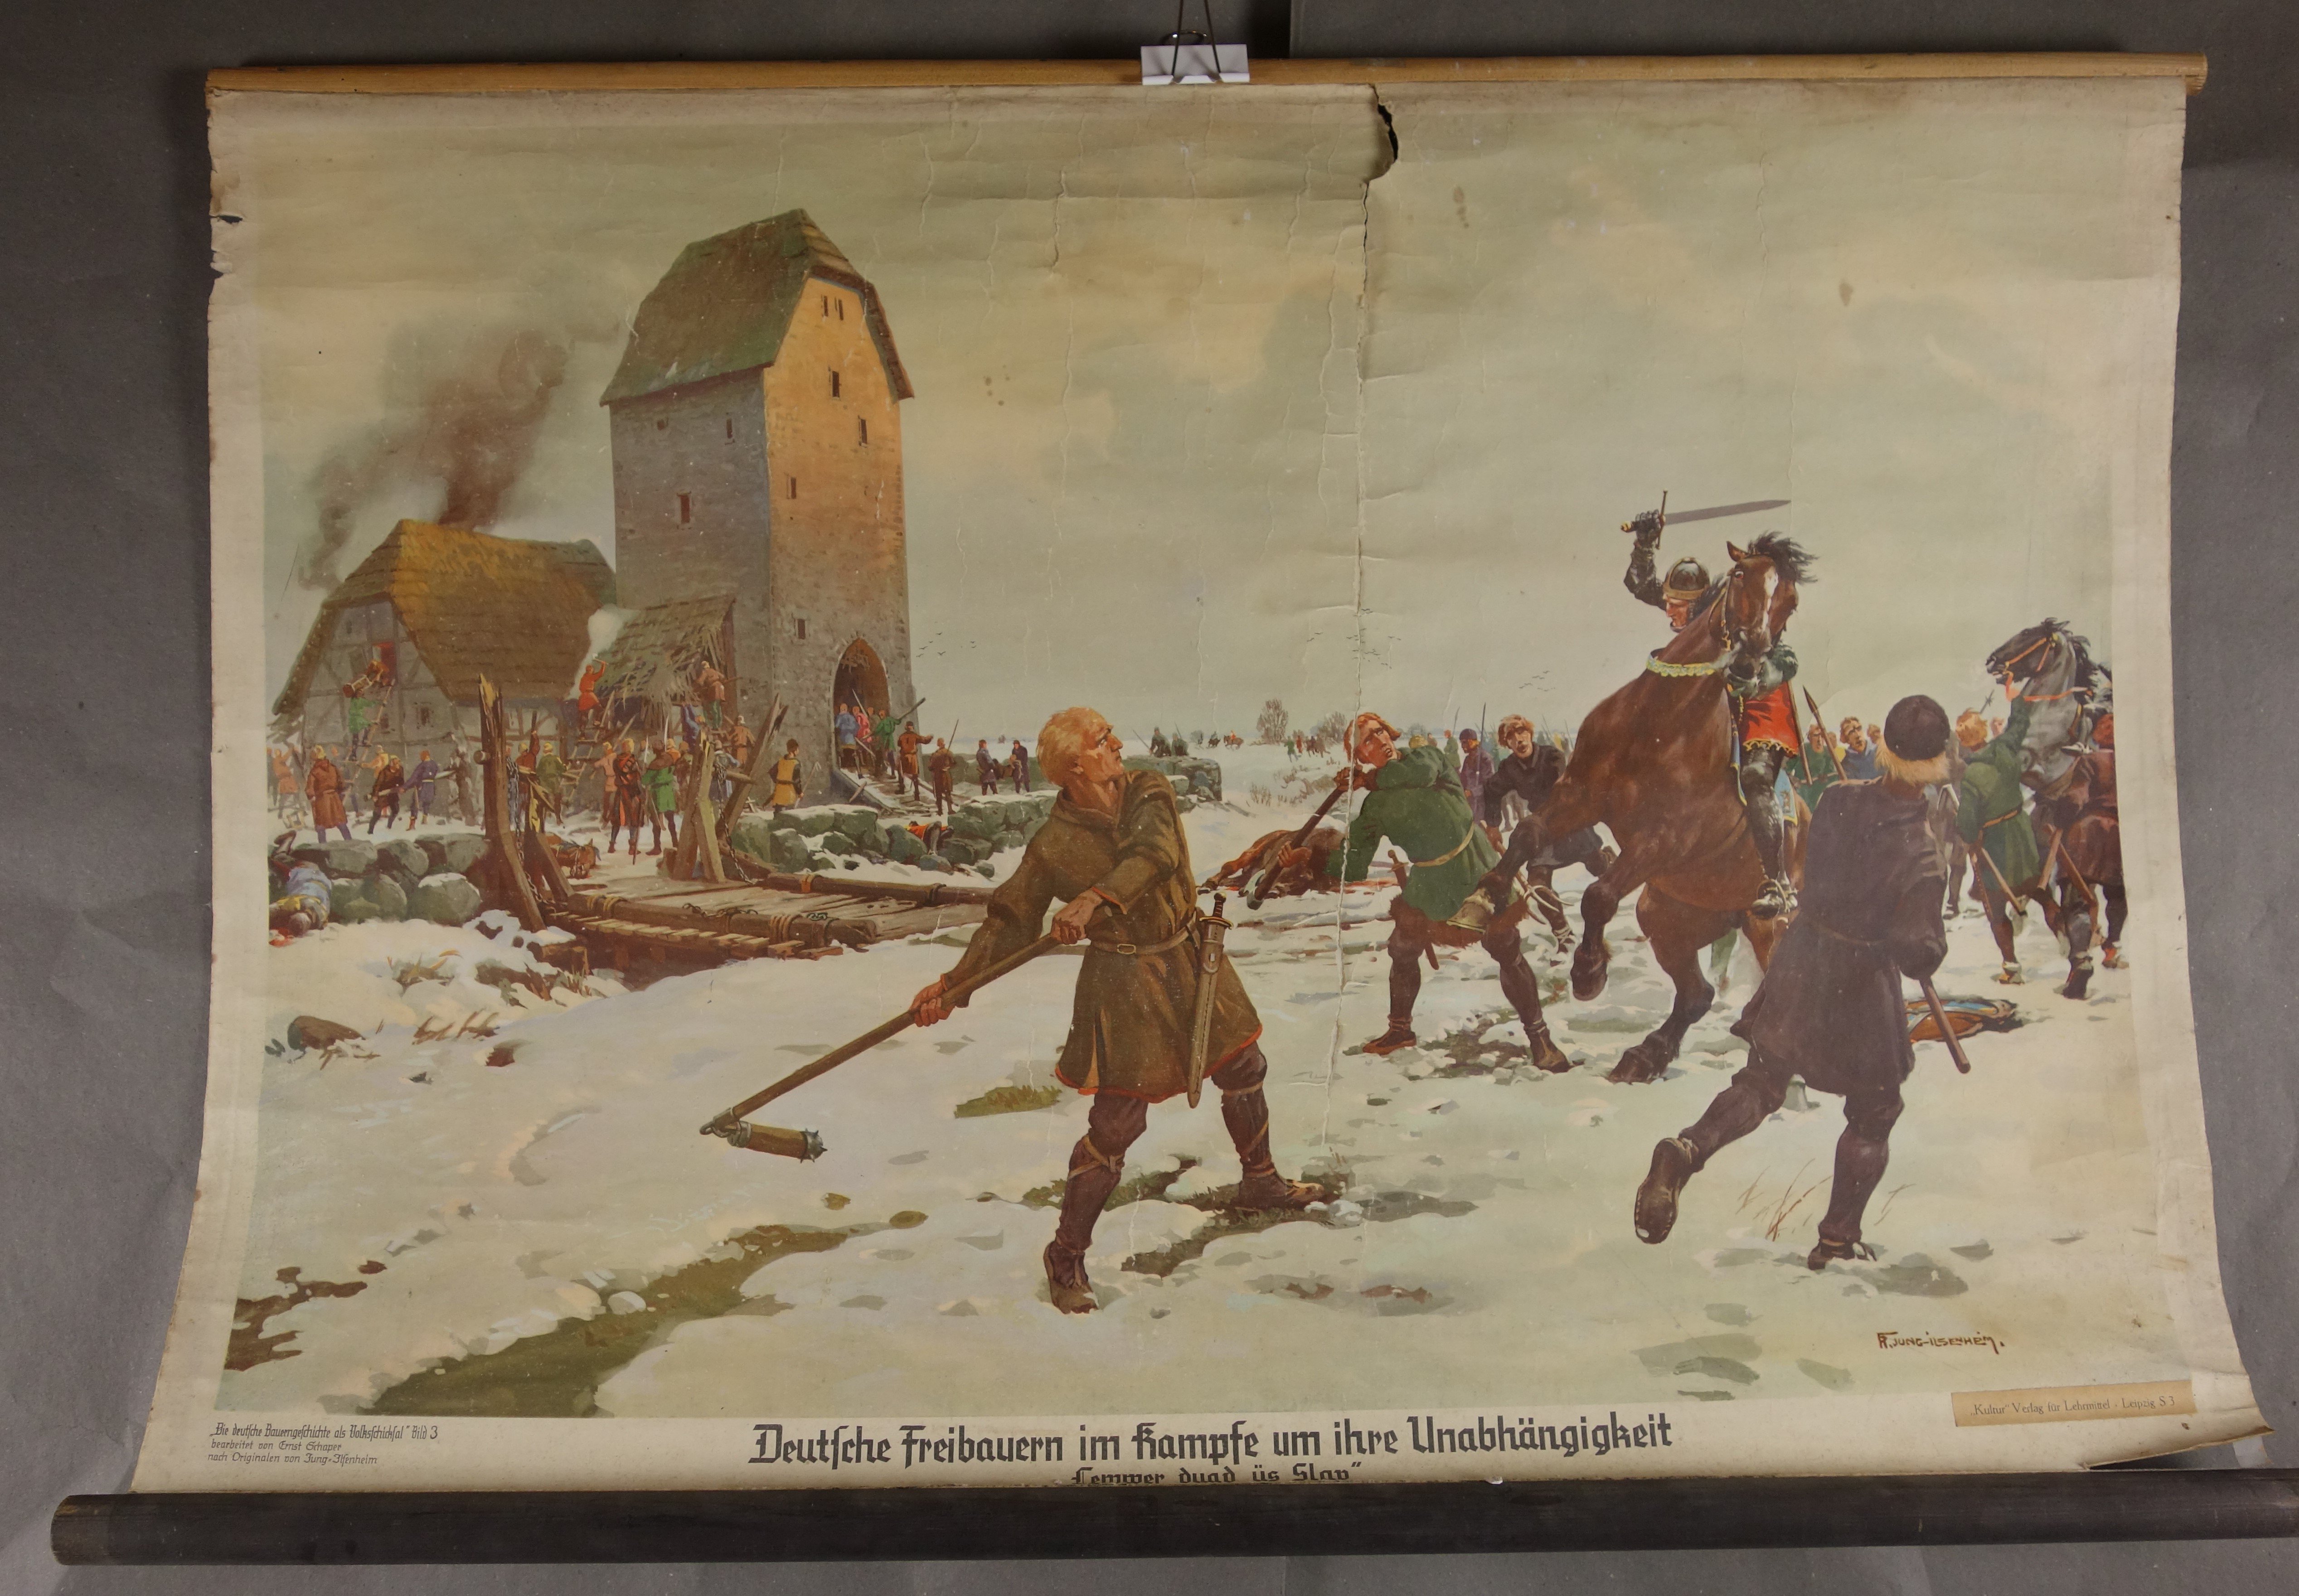 Wandkarte "Deutsche Freibauern im Kampf um ihre Unabhängigkeit" (Förder- und Heimatverein Stadt und Kloster Jerichow e.V. CC BY-NC-SA)